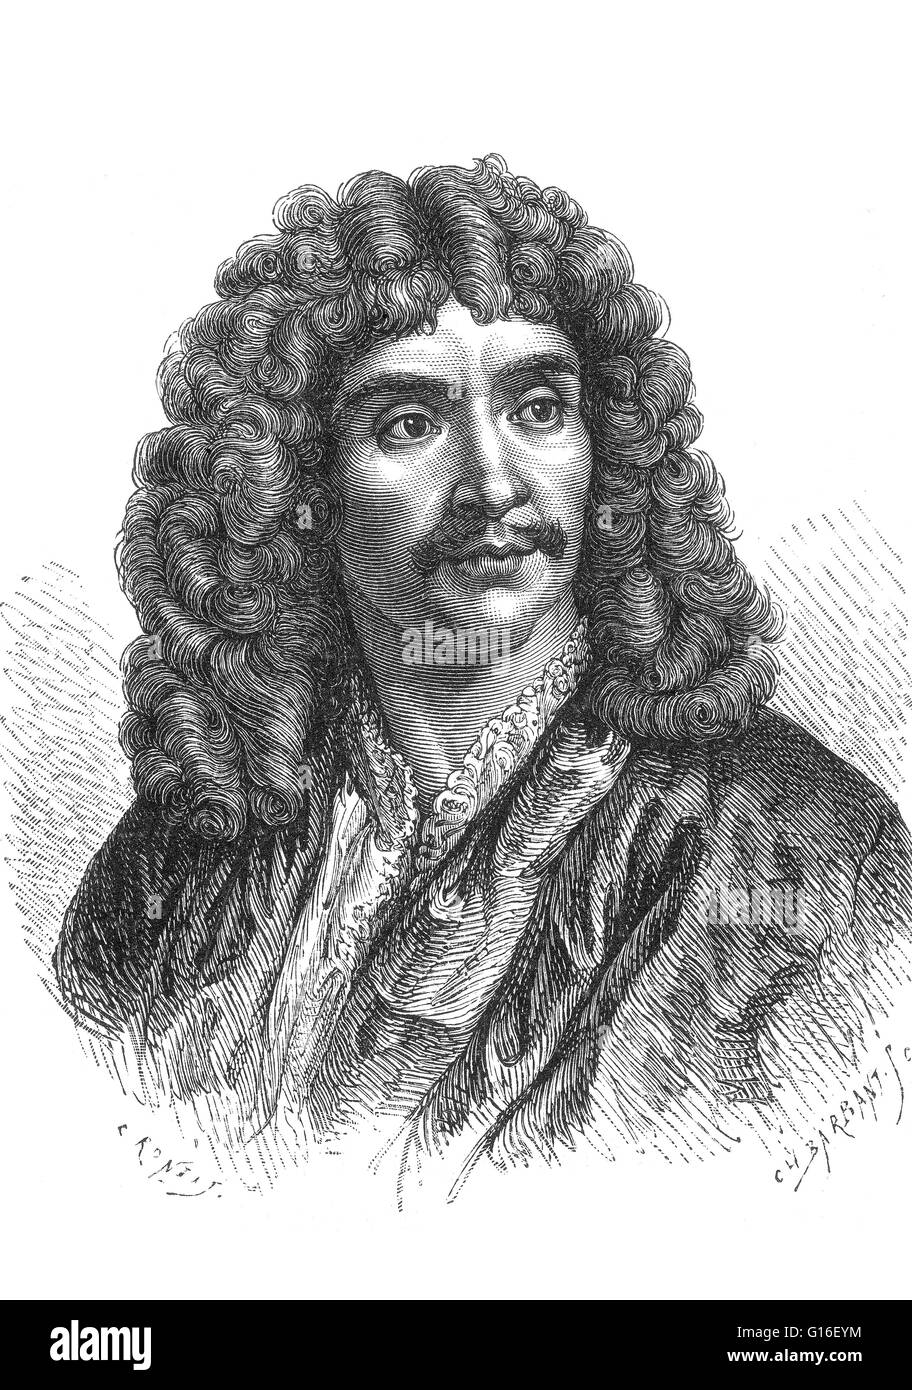 Jean-Baptiste Poquelin, connu sous le nom de Molière (janvier 15,1622 - Février 17,1673) était un acteur et dramaturge français qui est considéré comme l'un des plus grands maîtres de la comédie dans la littérature occidentale. Né dans une famille prospère et avoir st Banque D'Images